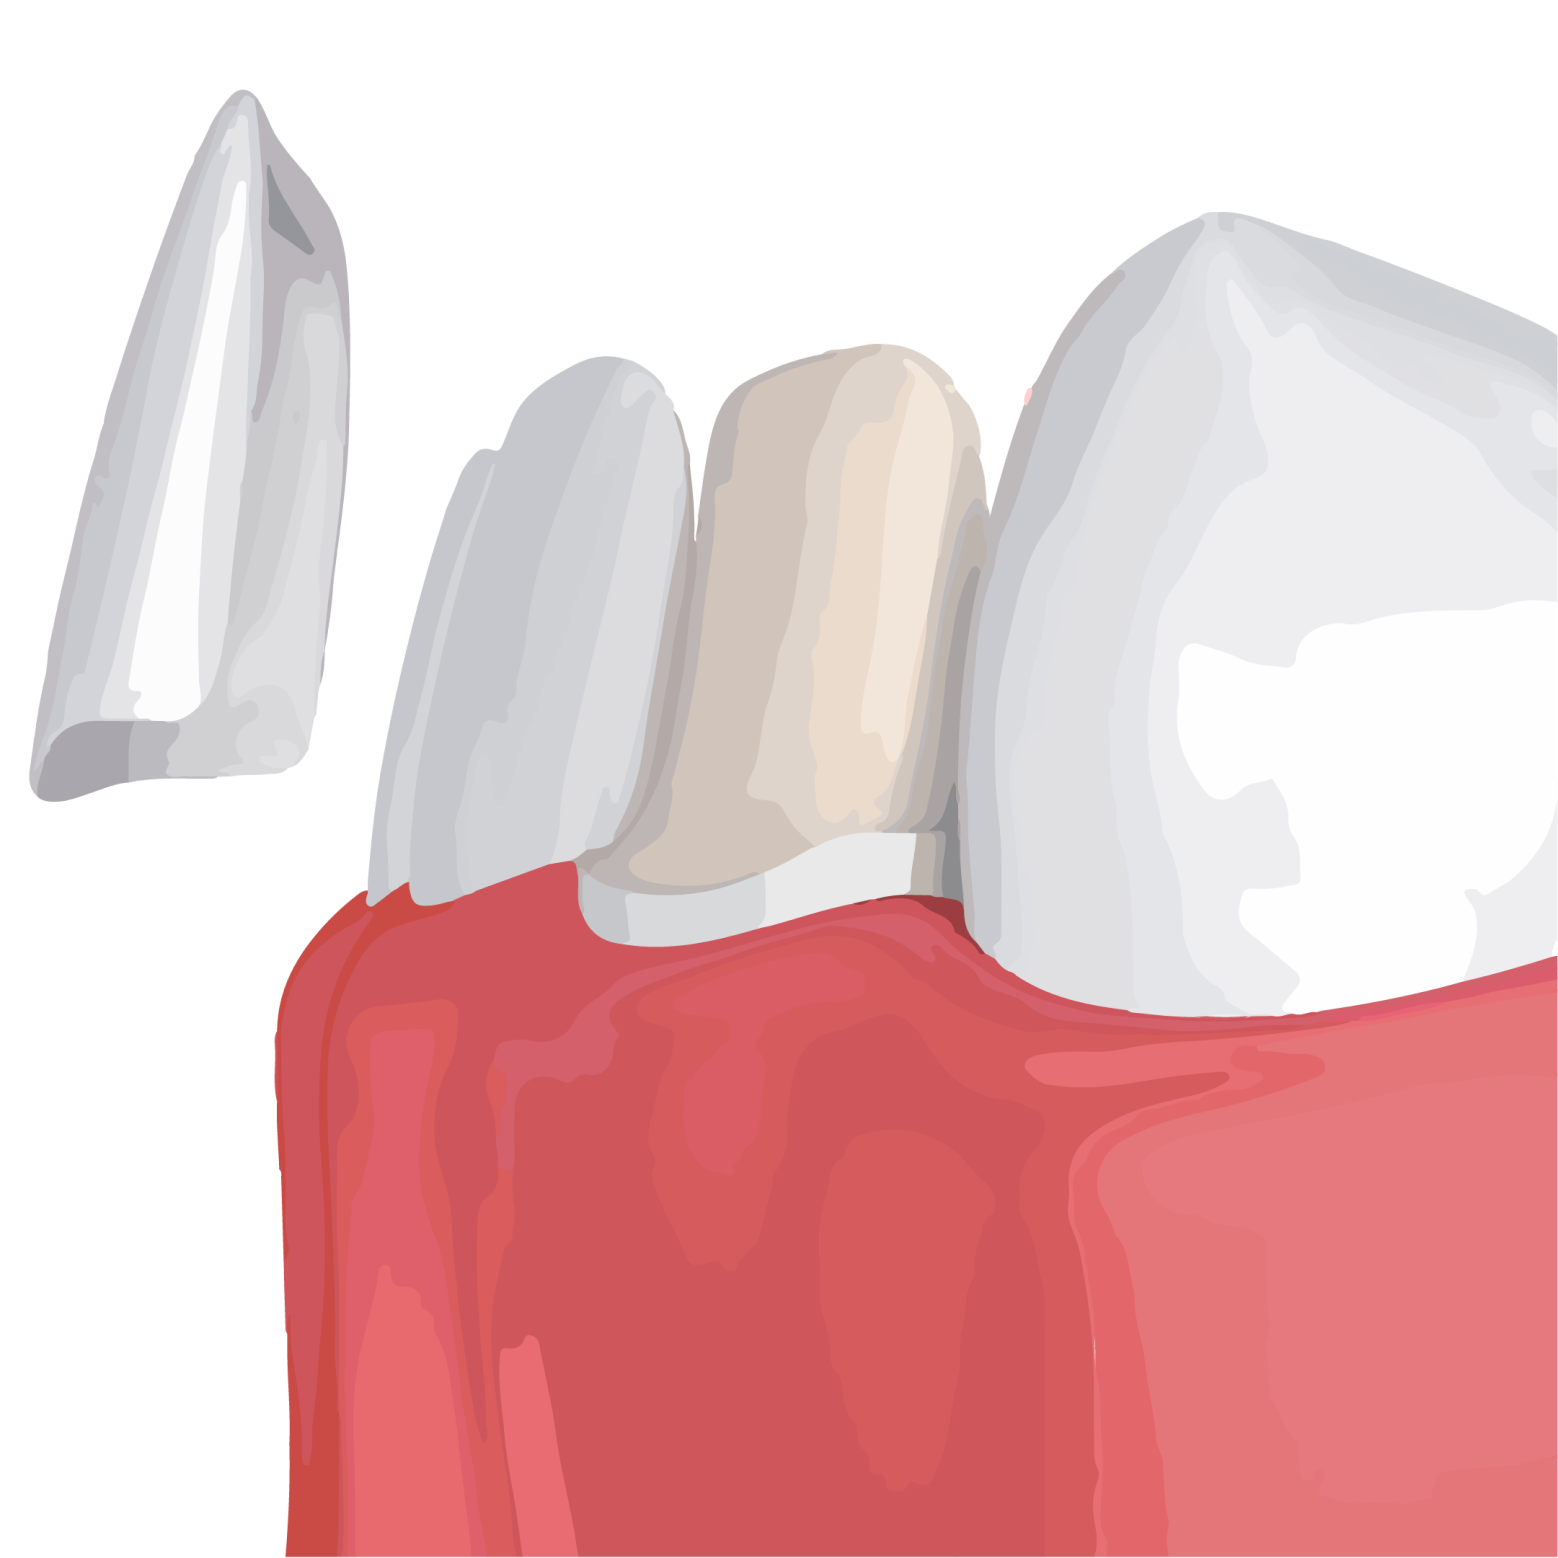 illustration of dental veneers being placed